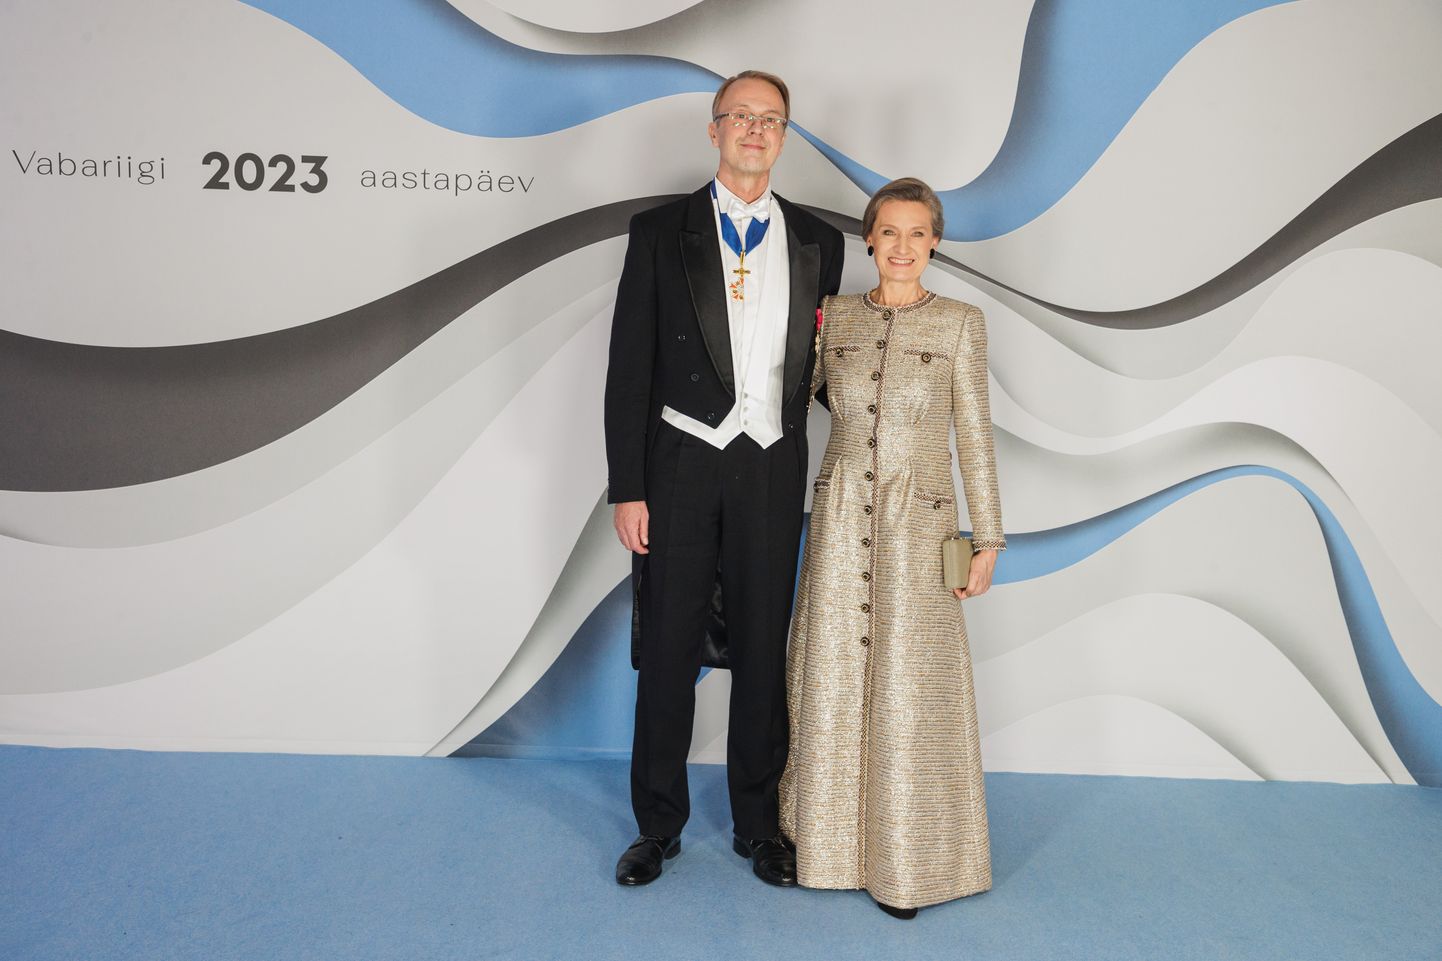 Айво Орав со своей женой Маре Орав на президентском приеме в прошлом году.